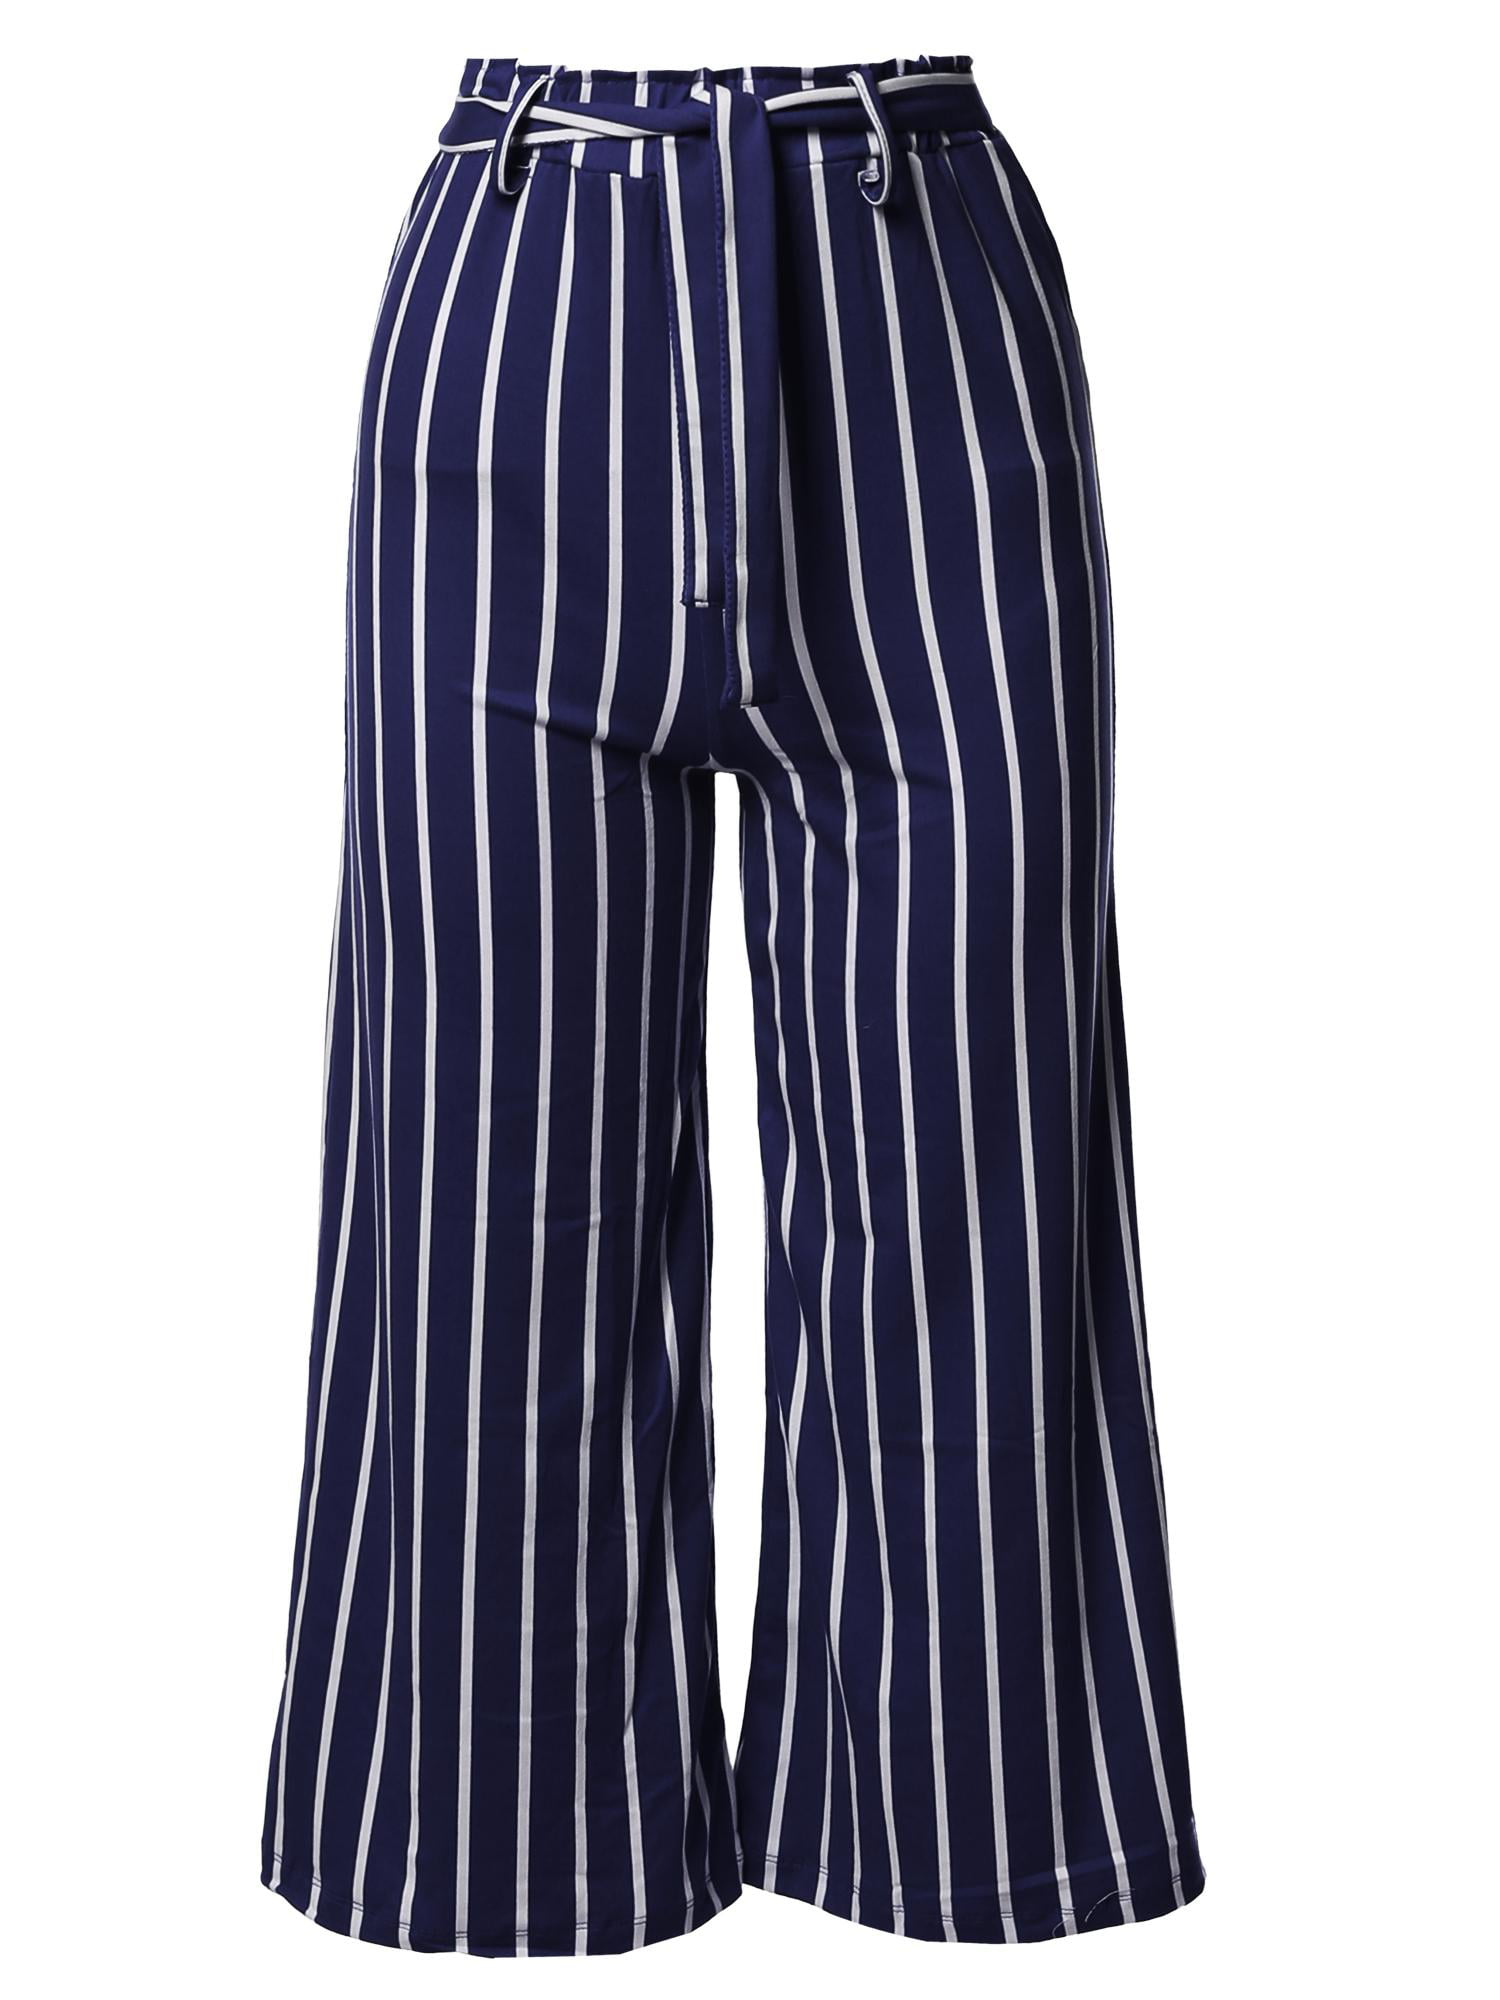 FashionOutfit Women's Casual Tie Waist Culottes Capri Length Pants ...